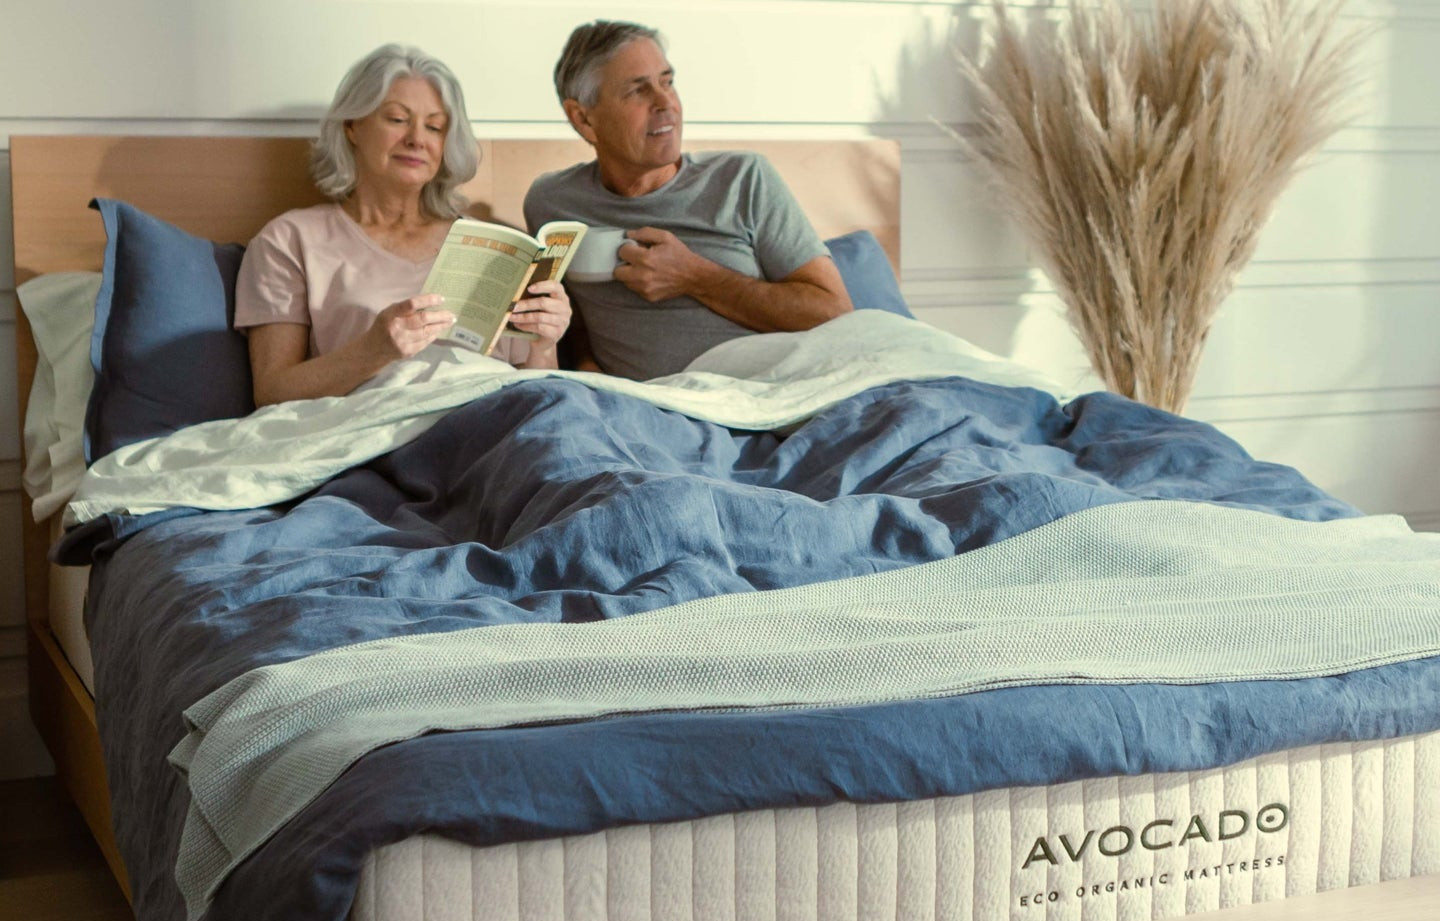 avocado eco affordable mattress